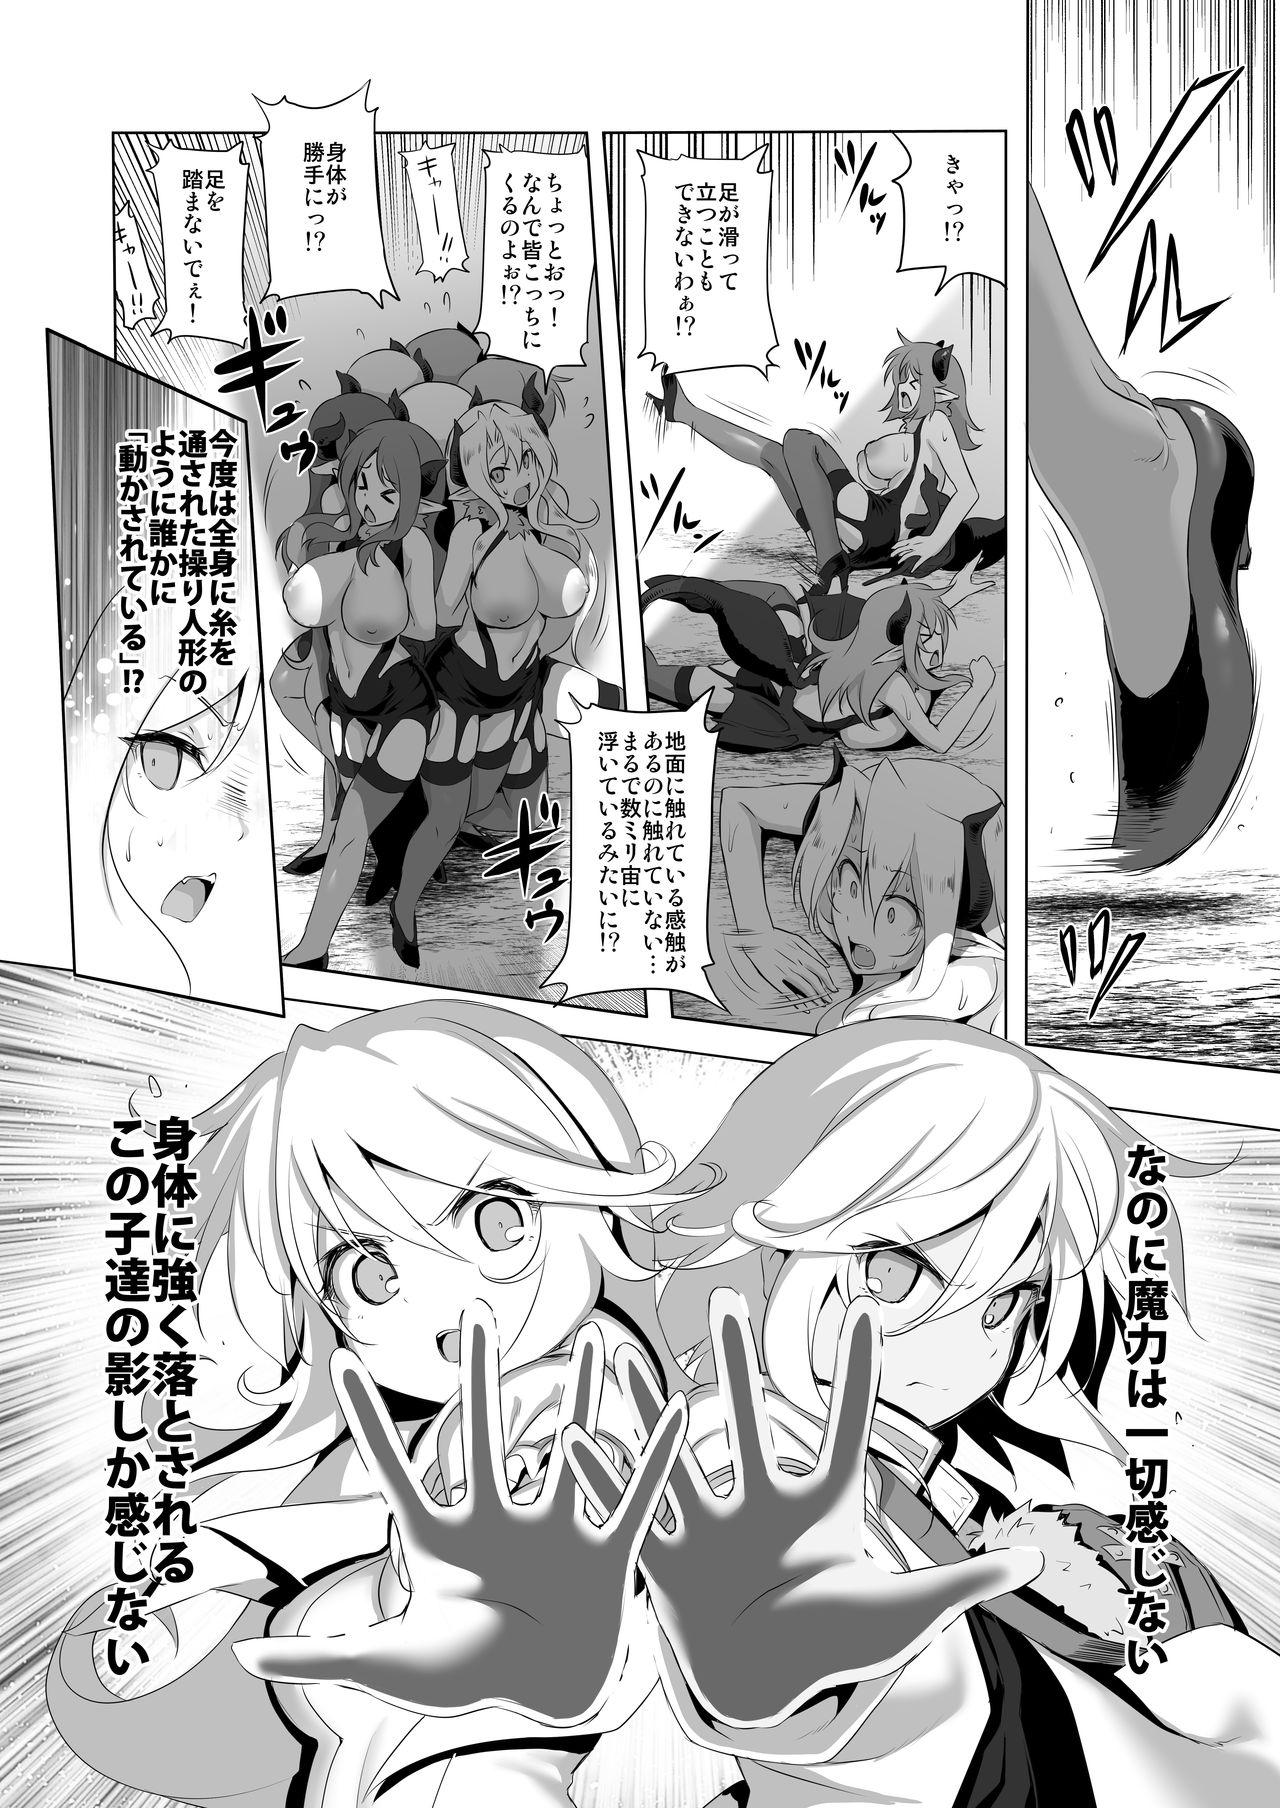 Screaming Makotoni Zannen desu ga Bouken no Sho 6 wa Kiete Shimaimashita. - Original Submission - Page 8